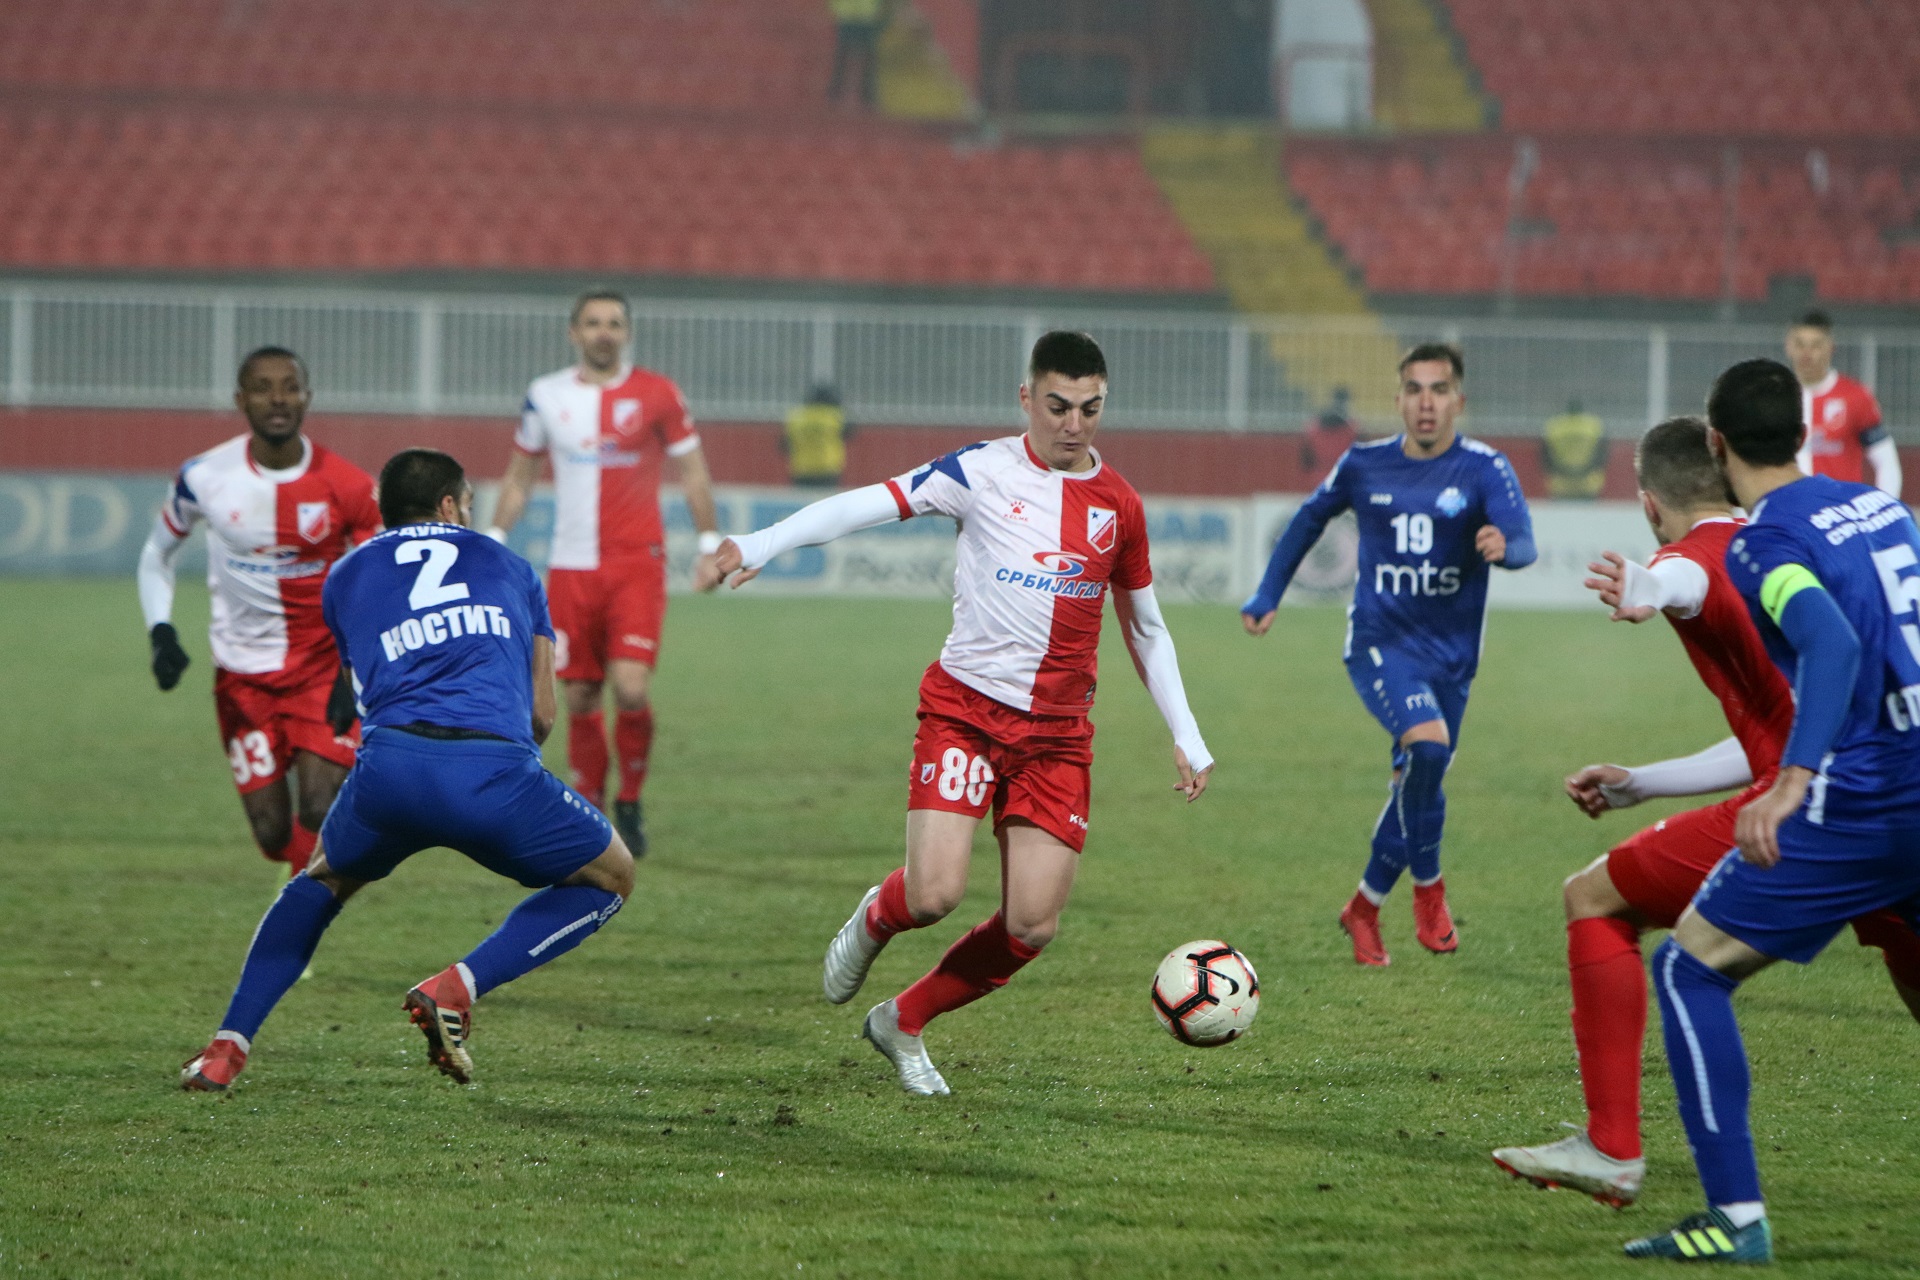 Voša convincing against Radnički! – FK Vojvodina